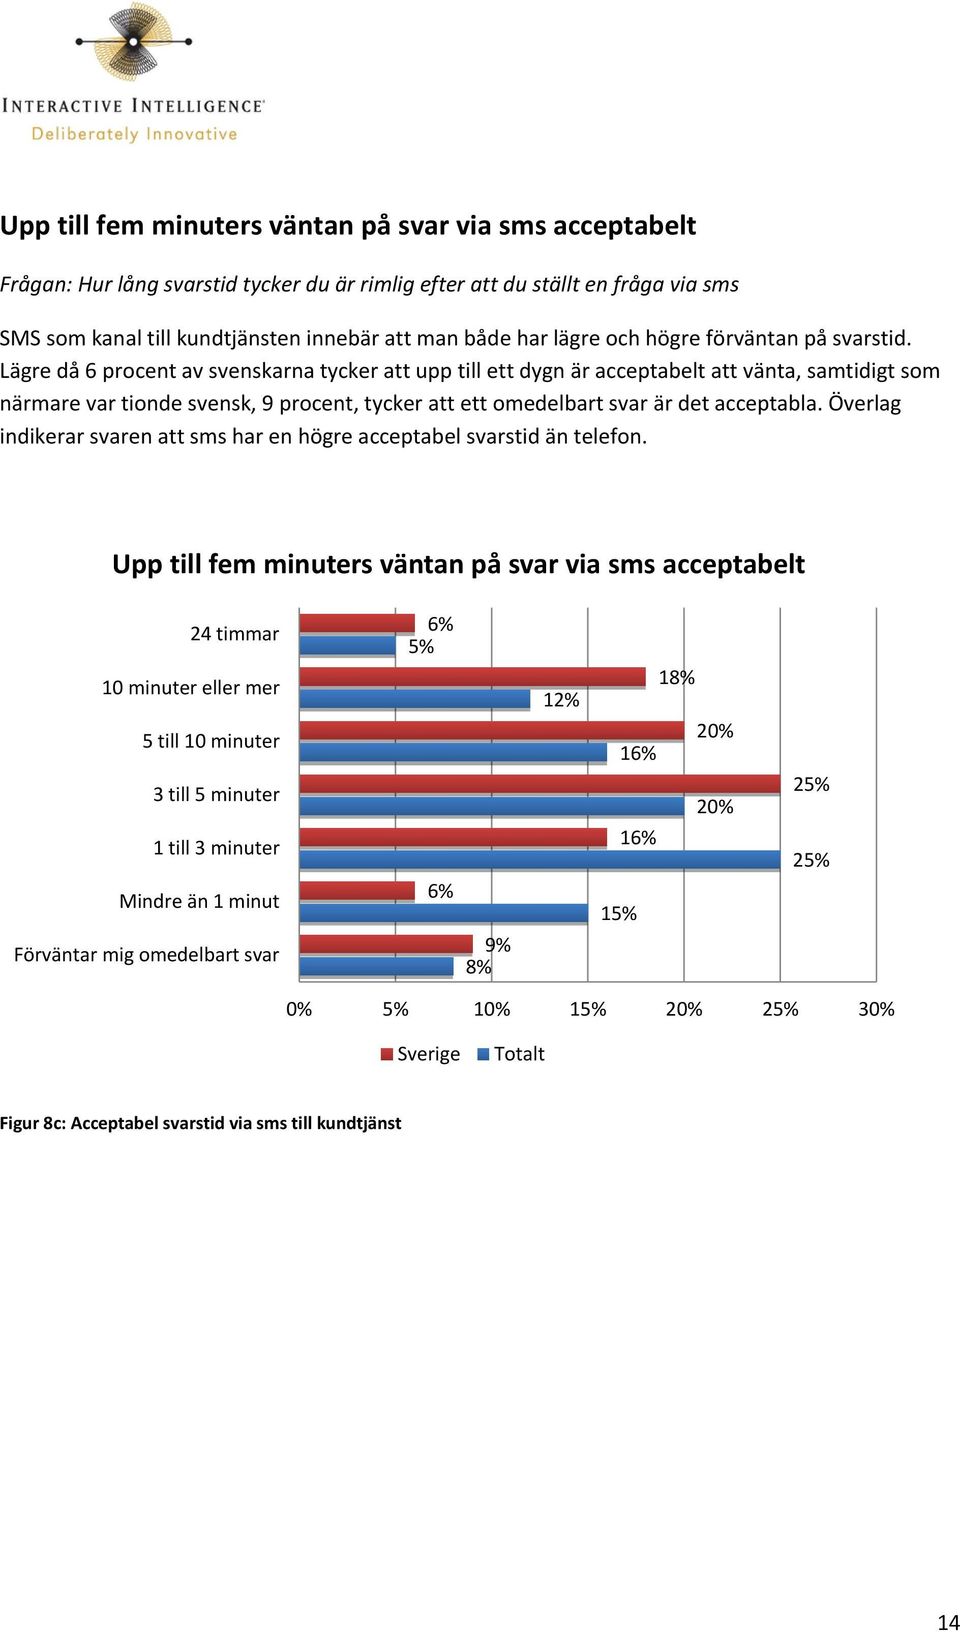 Lägre då 6 procent av svenskarna tycker att upp till ett dygn är acceptabelt att vänta, samtidigt som närmare var tionde svensk, 9 procent, tycker att ett omedelbart svar är det acceptabla.